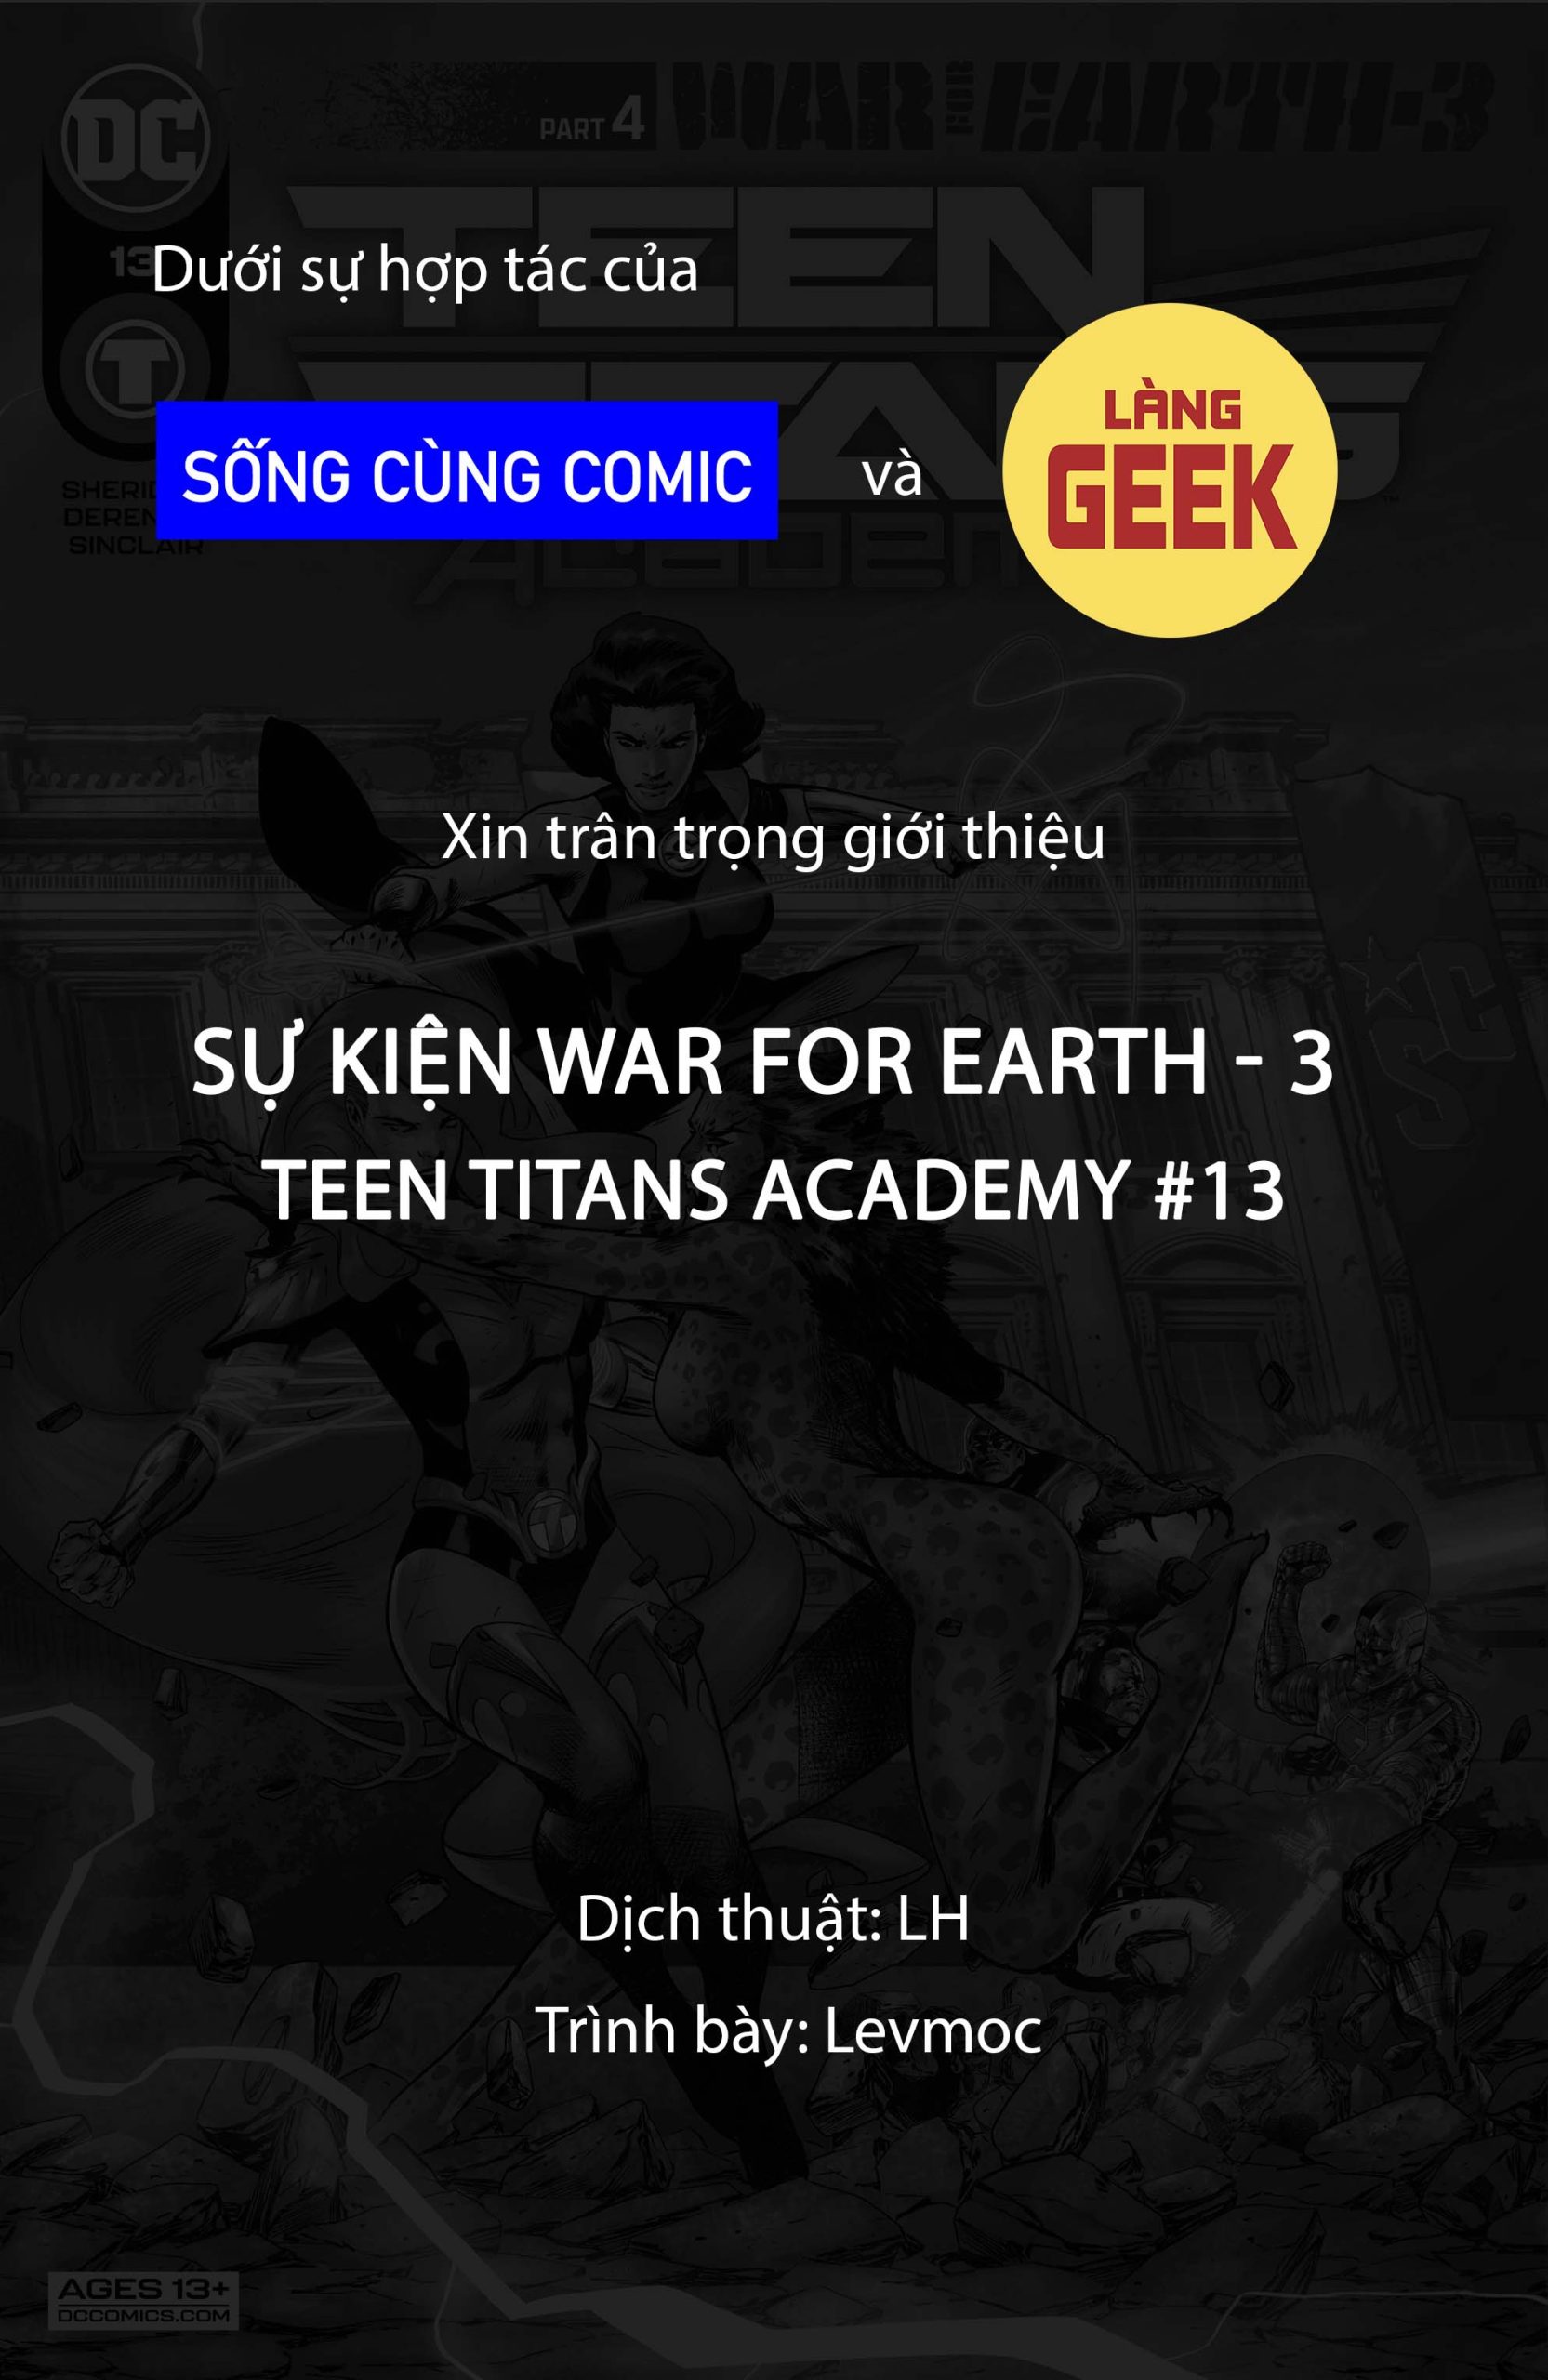 https://langgeek.net/wp-content/webpc-passthru.php?src=https://langgeek.net/wp-content/uploads/2022/04/Teen-Titans-Academy-2021-013-001-1-scaled.jpg&nocache=1